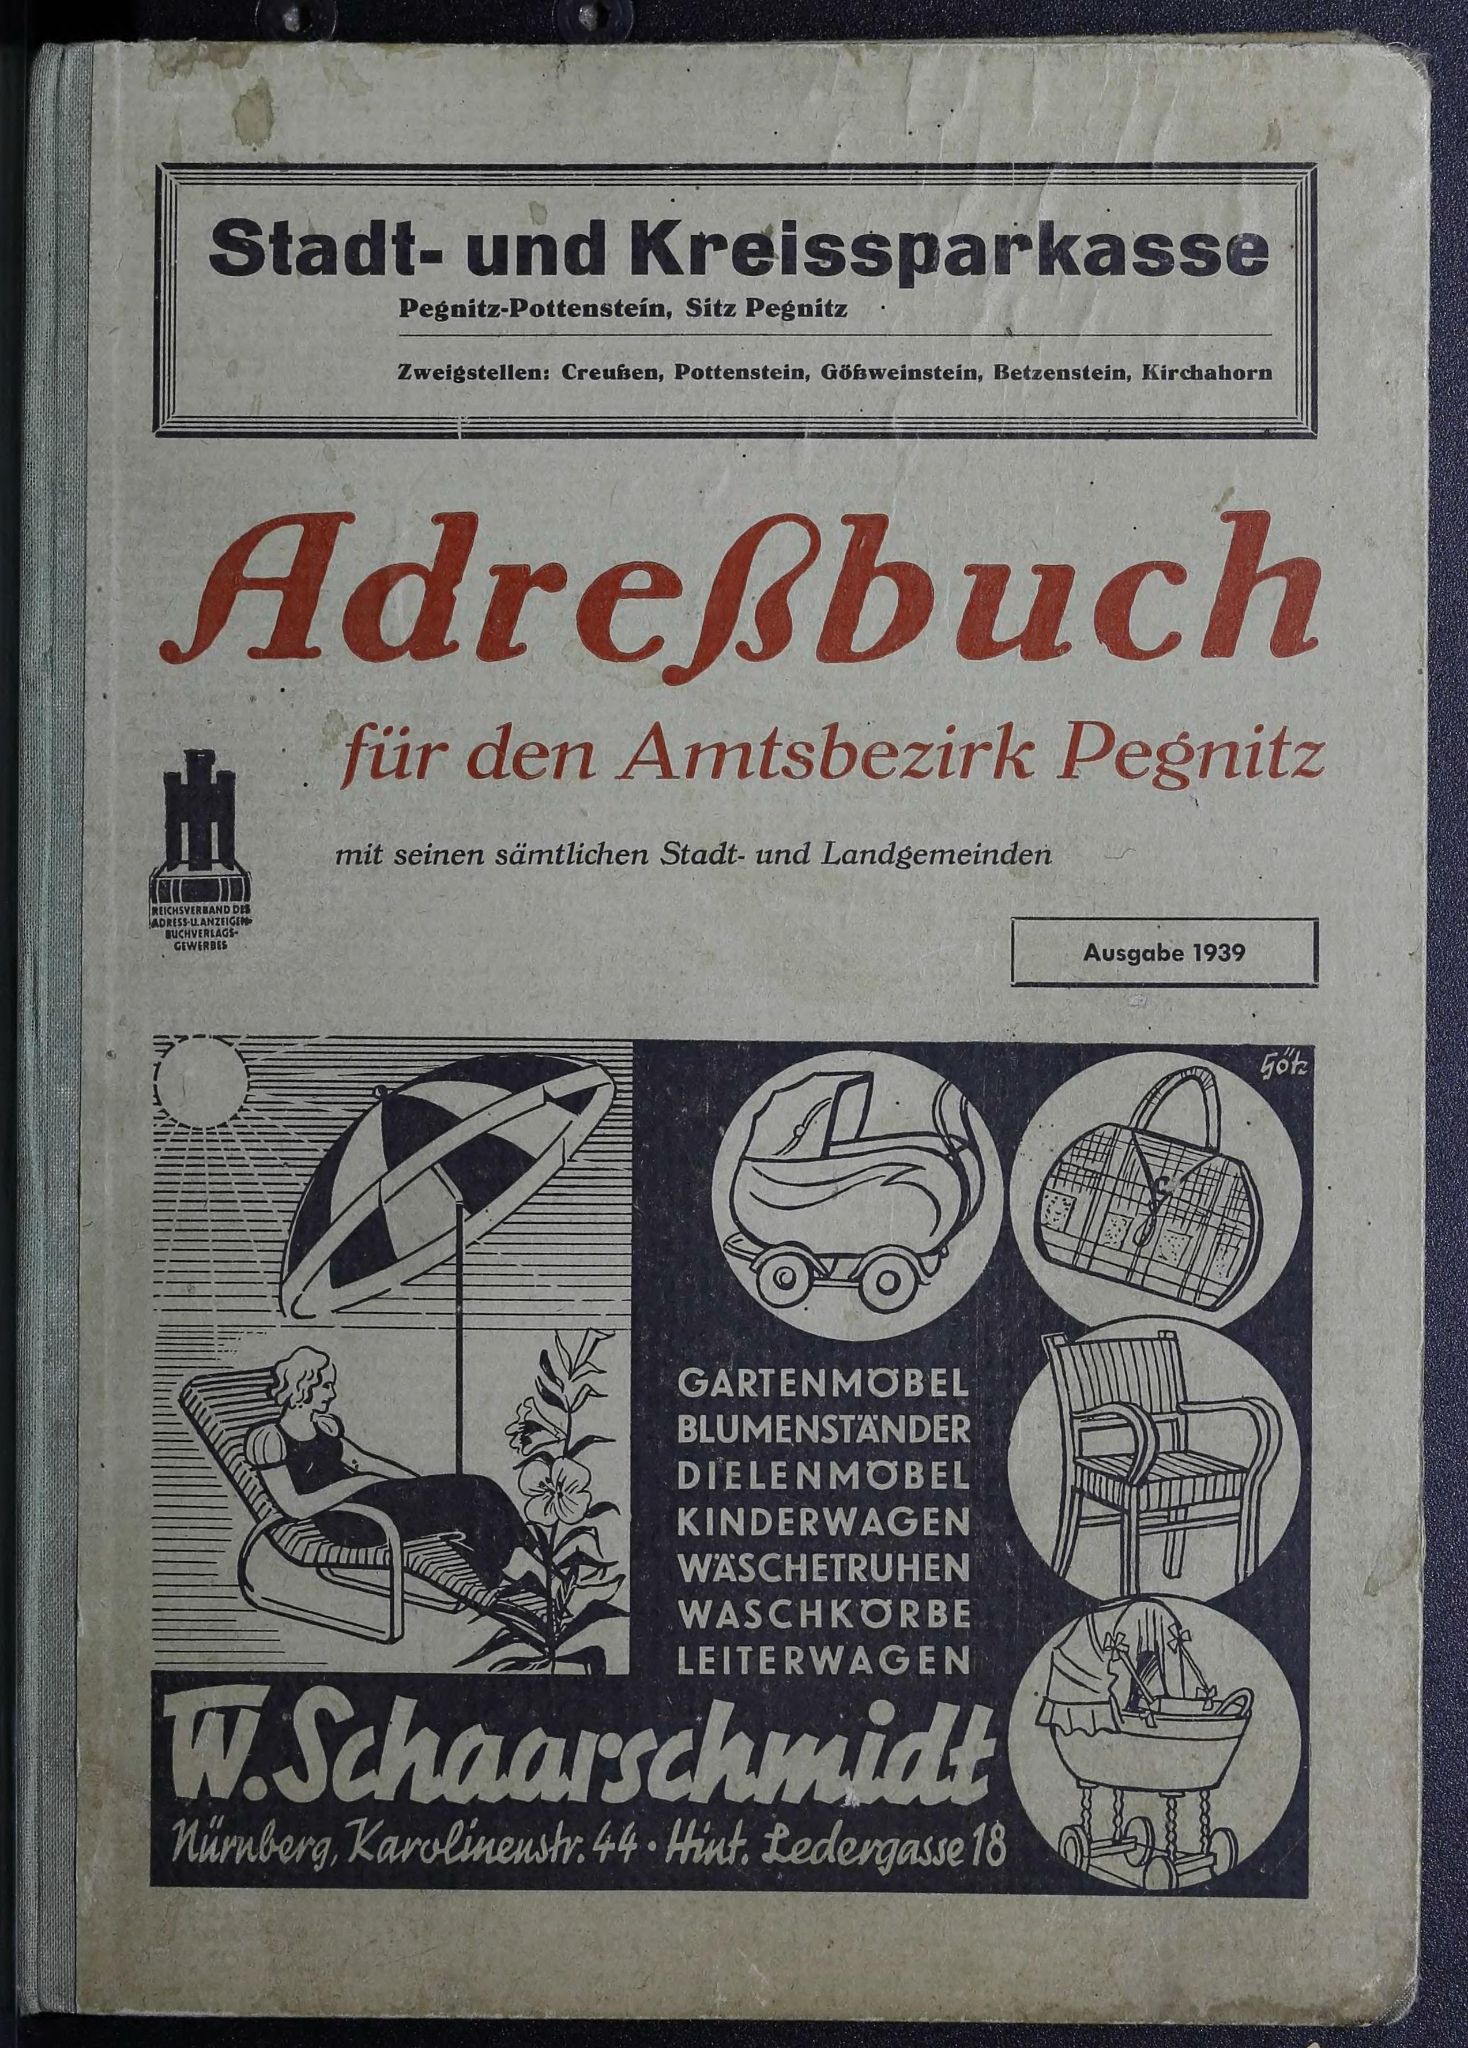 Adreßbuch für den Amtsbezirk Pegnitz 1939